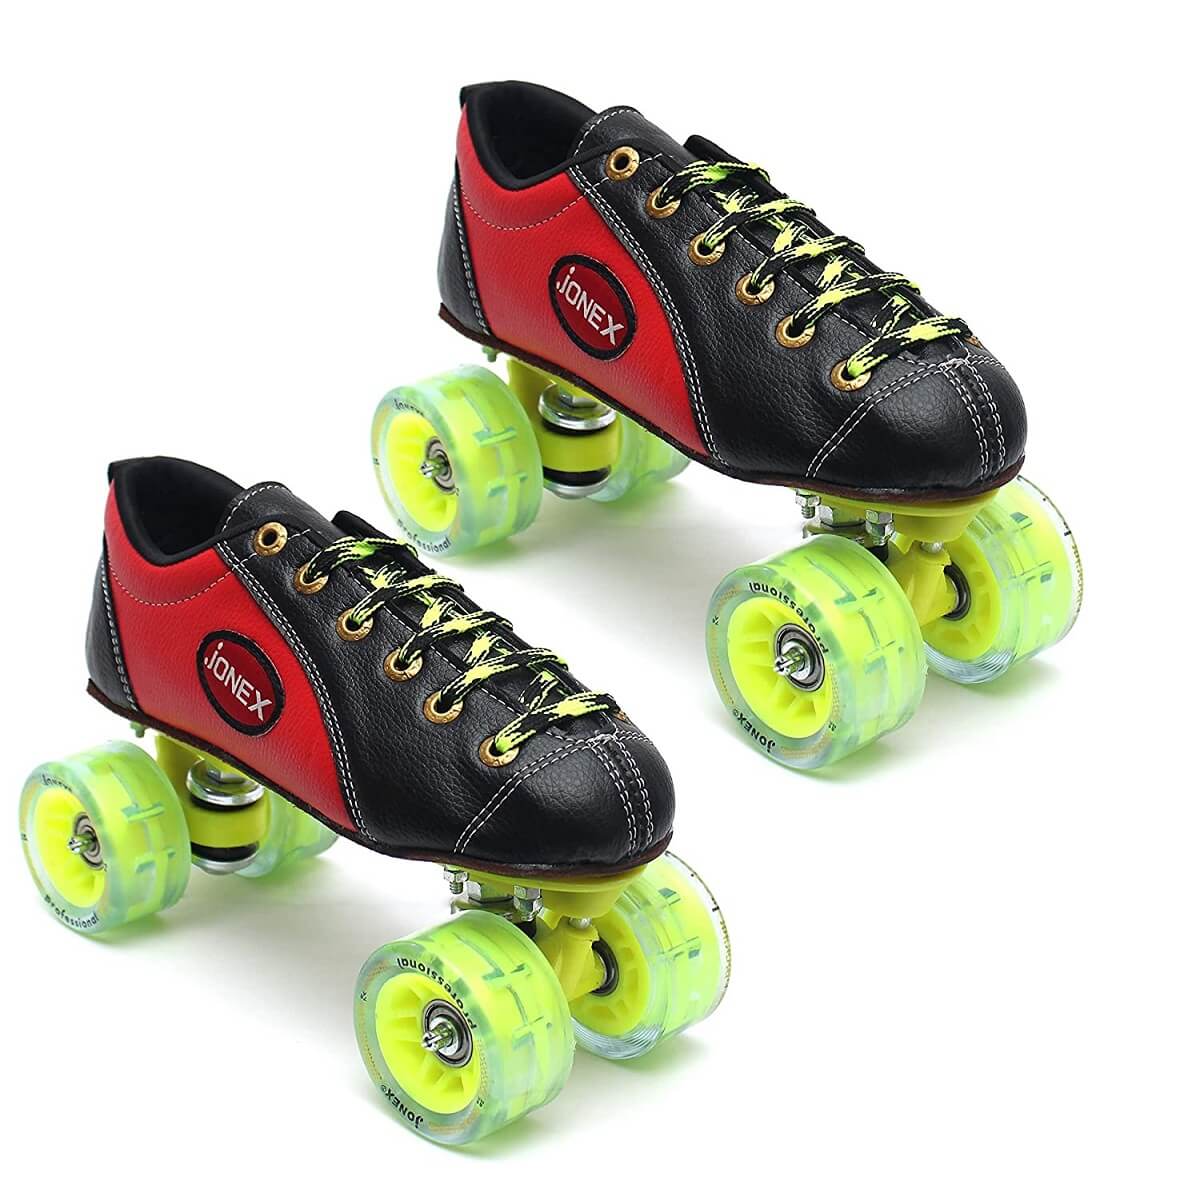 Led Light Deform Wheel Skates Roller Skate Shoes With 4-Wheel Deformation  Parkour Runaway Sneakers Children